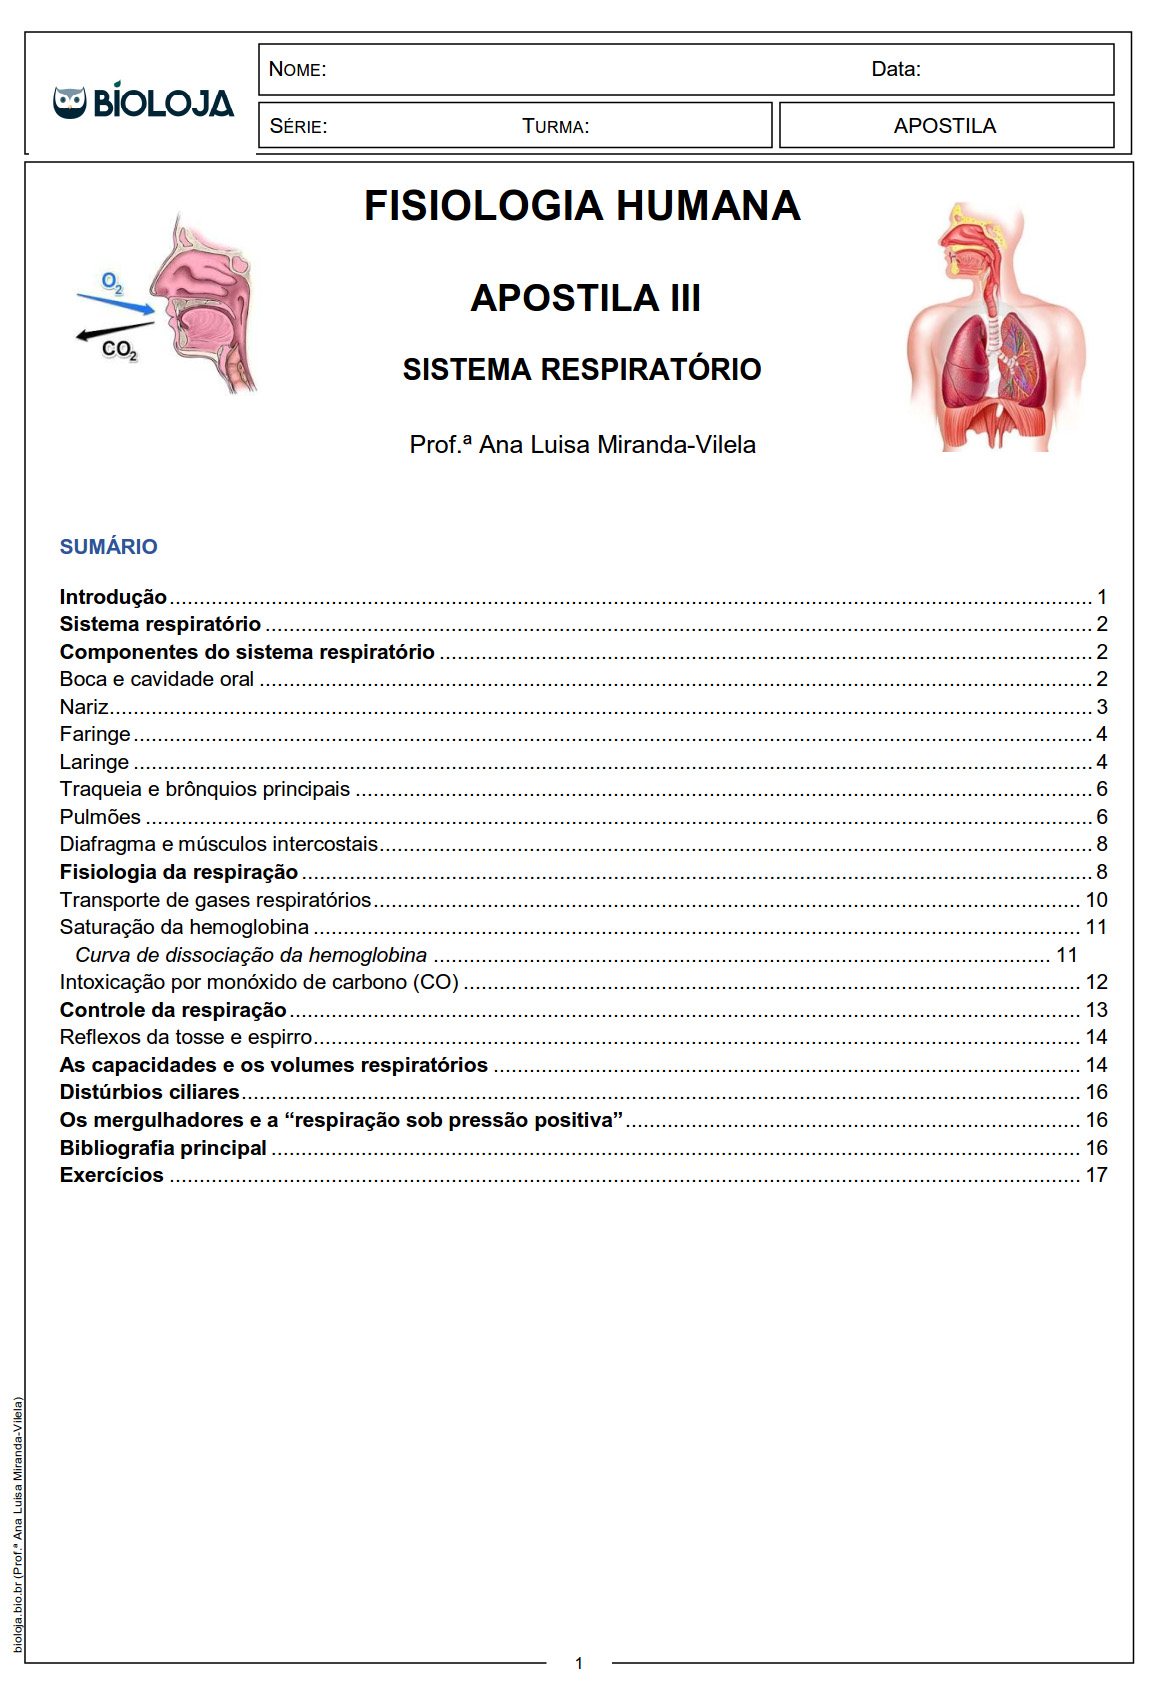 Apostila Fisiologia de órgãos e sistema III: sistema respiratório slide 0